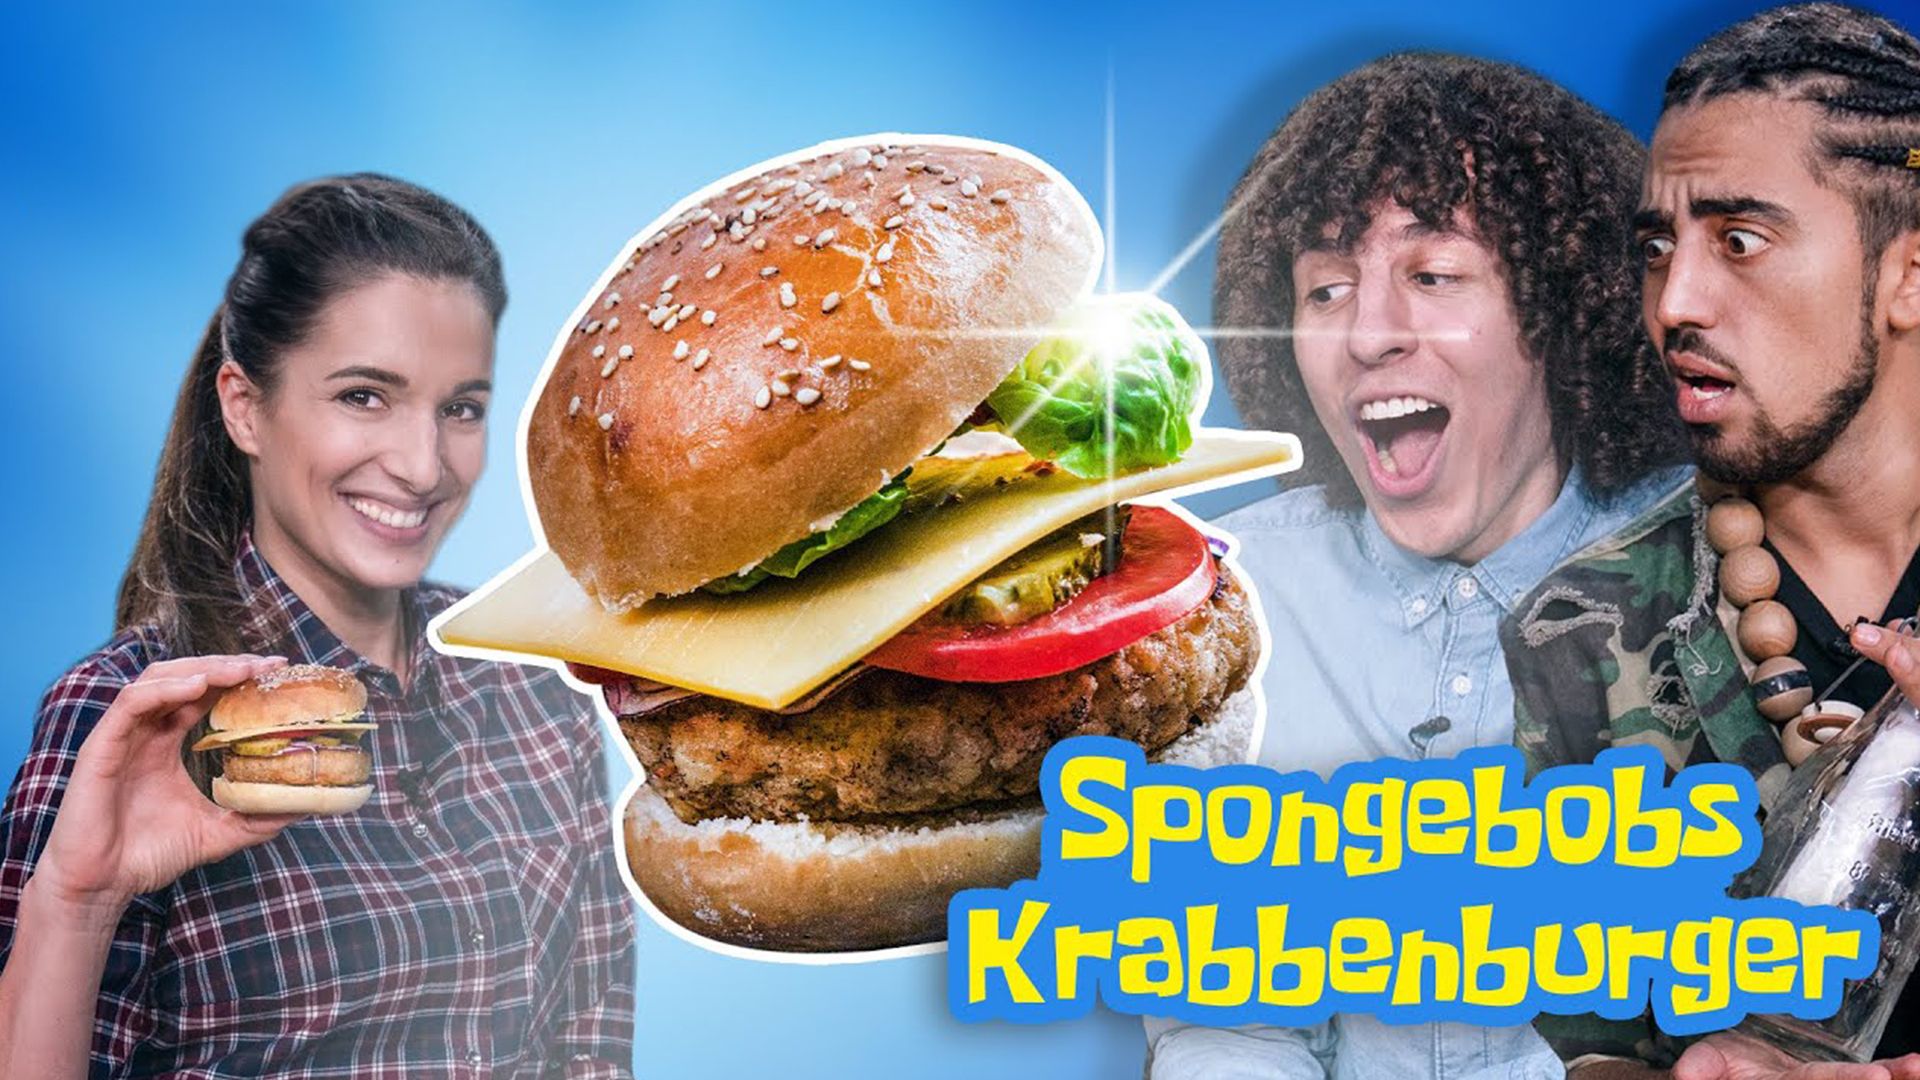 Spongebobs Krabbenburger mit Jay & Arya / Sallys Welt